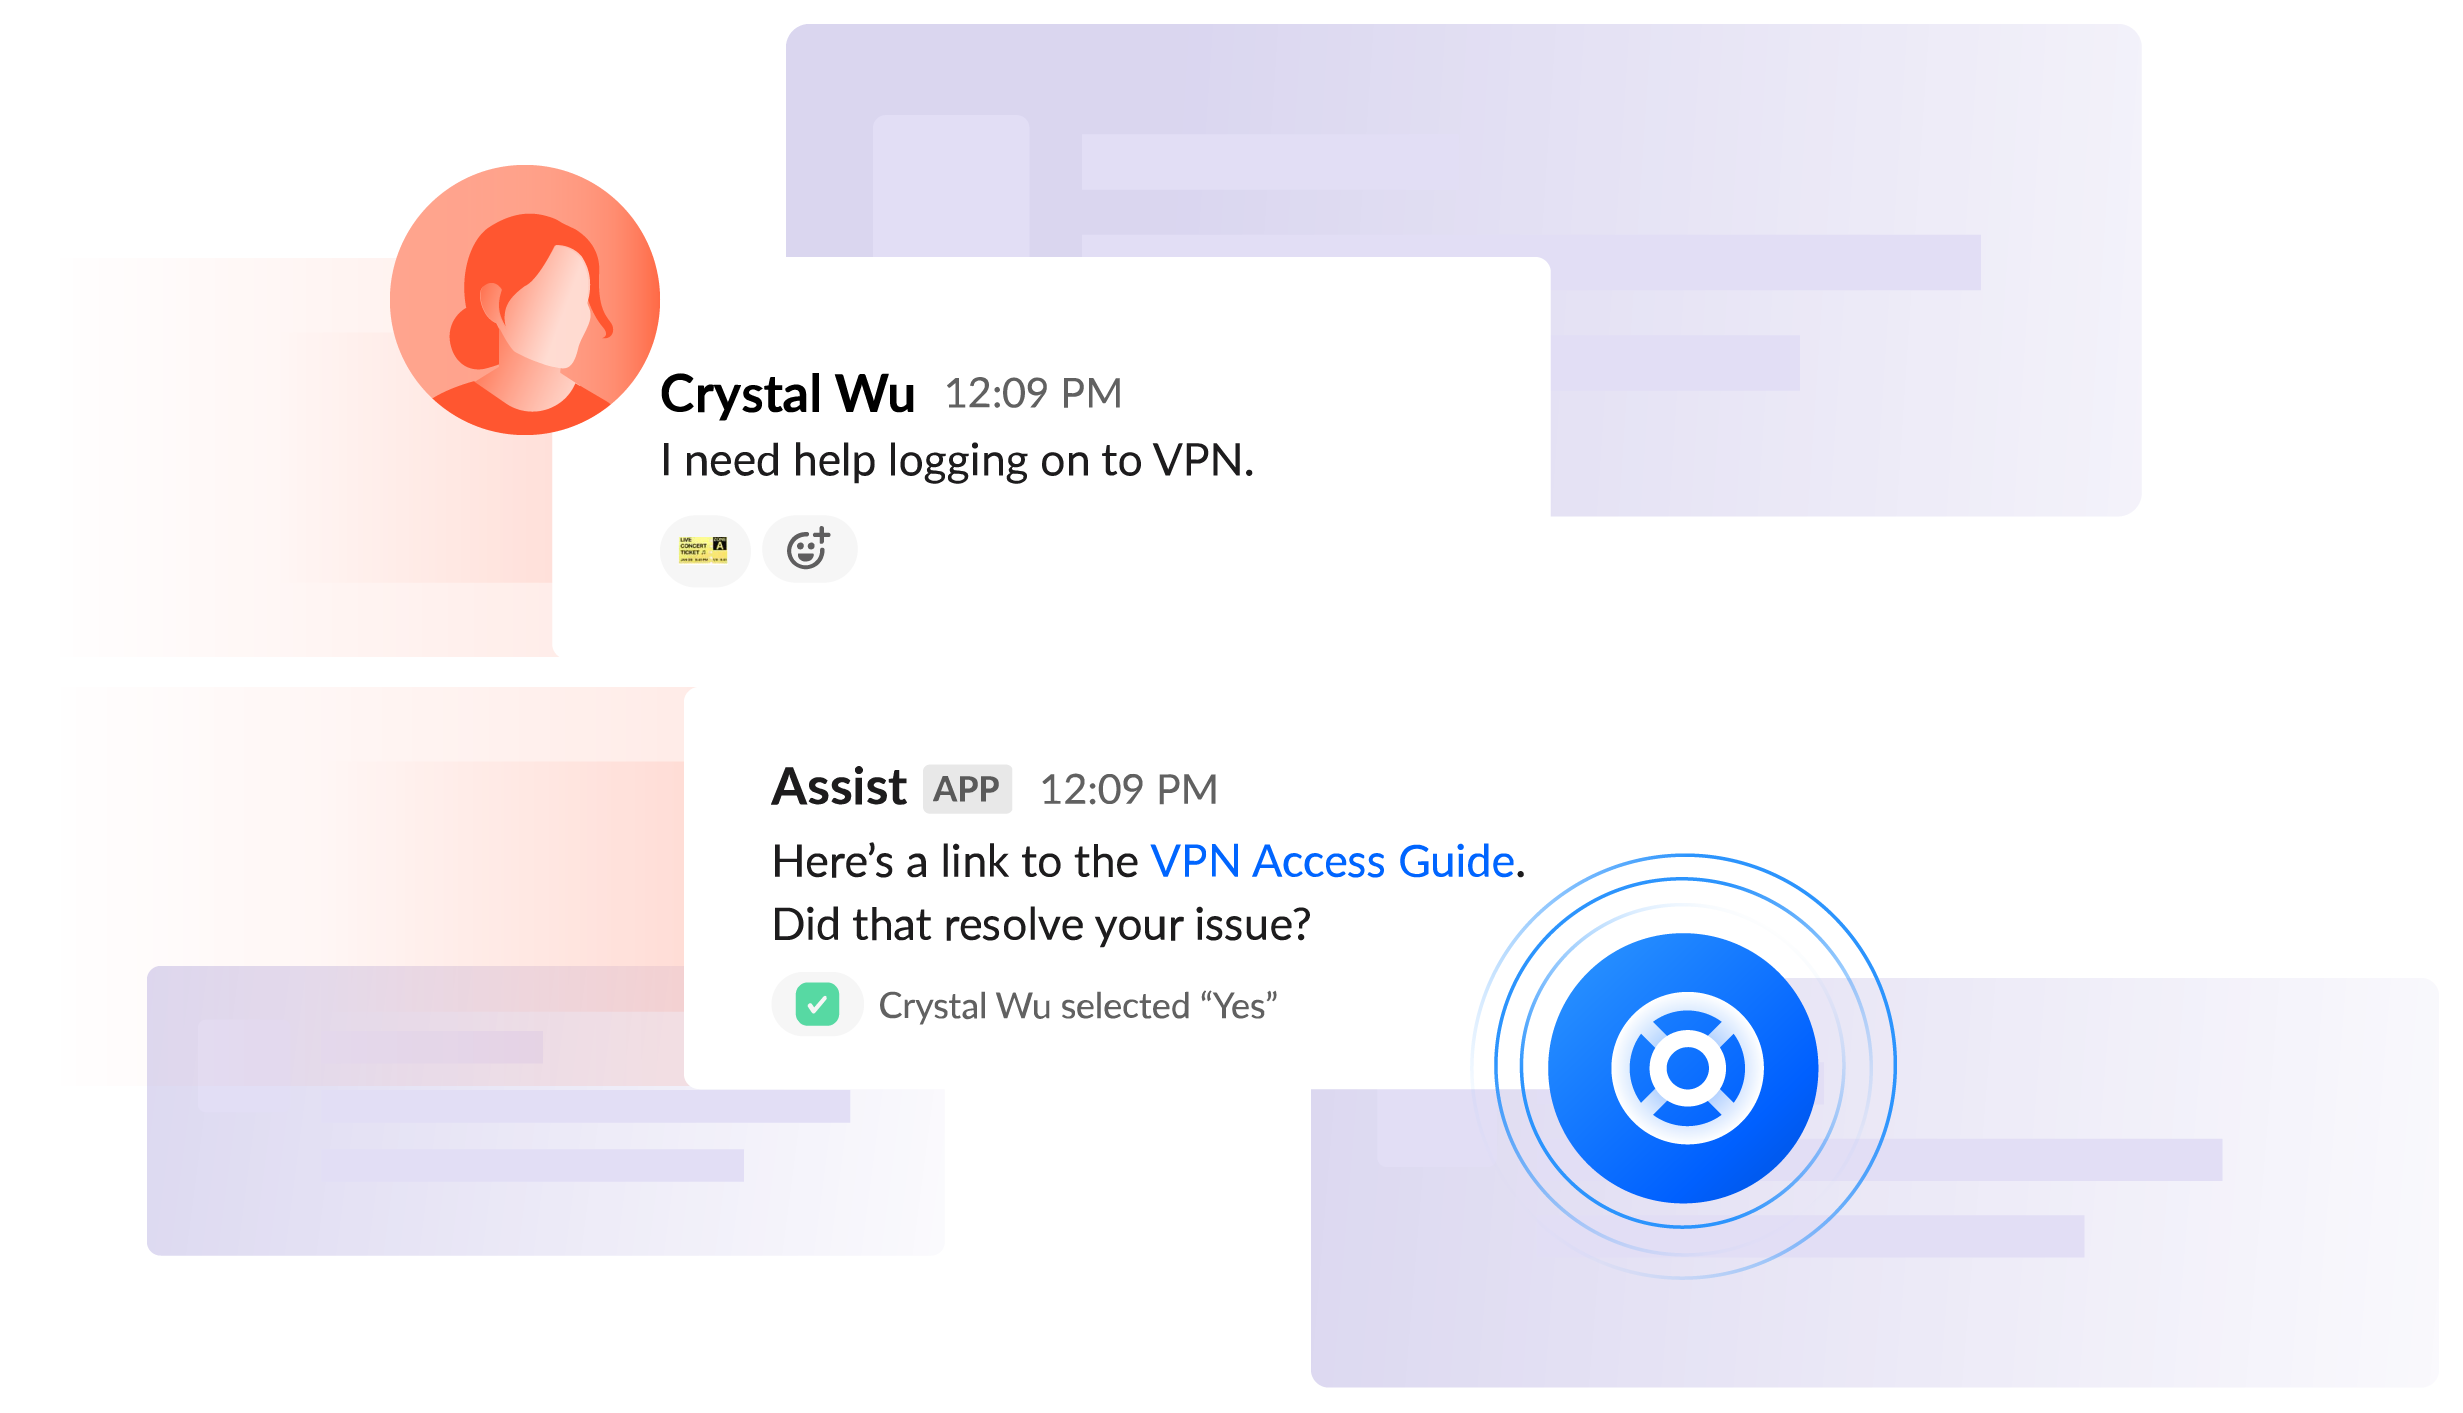 Chat Slack « J'ai besoin d'aide pour me connecter au VPN » - Crystal ; « Voici un lien vers le guide d'accès au VPN. Cela a-t-il résolu votre problème ? » - Assist